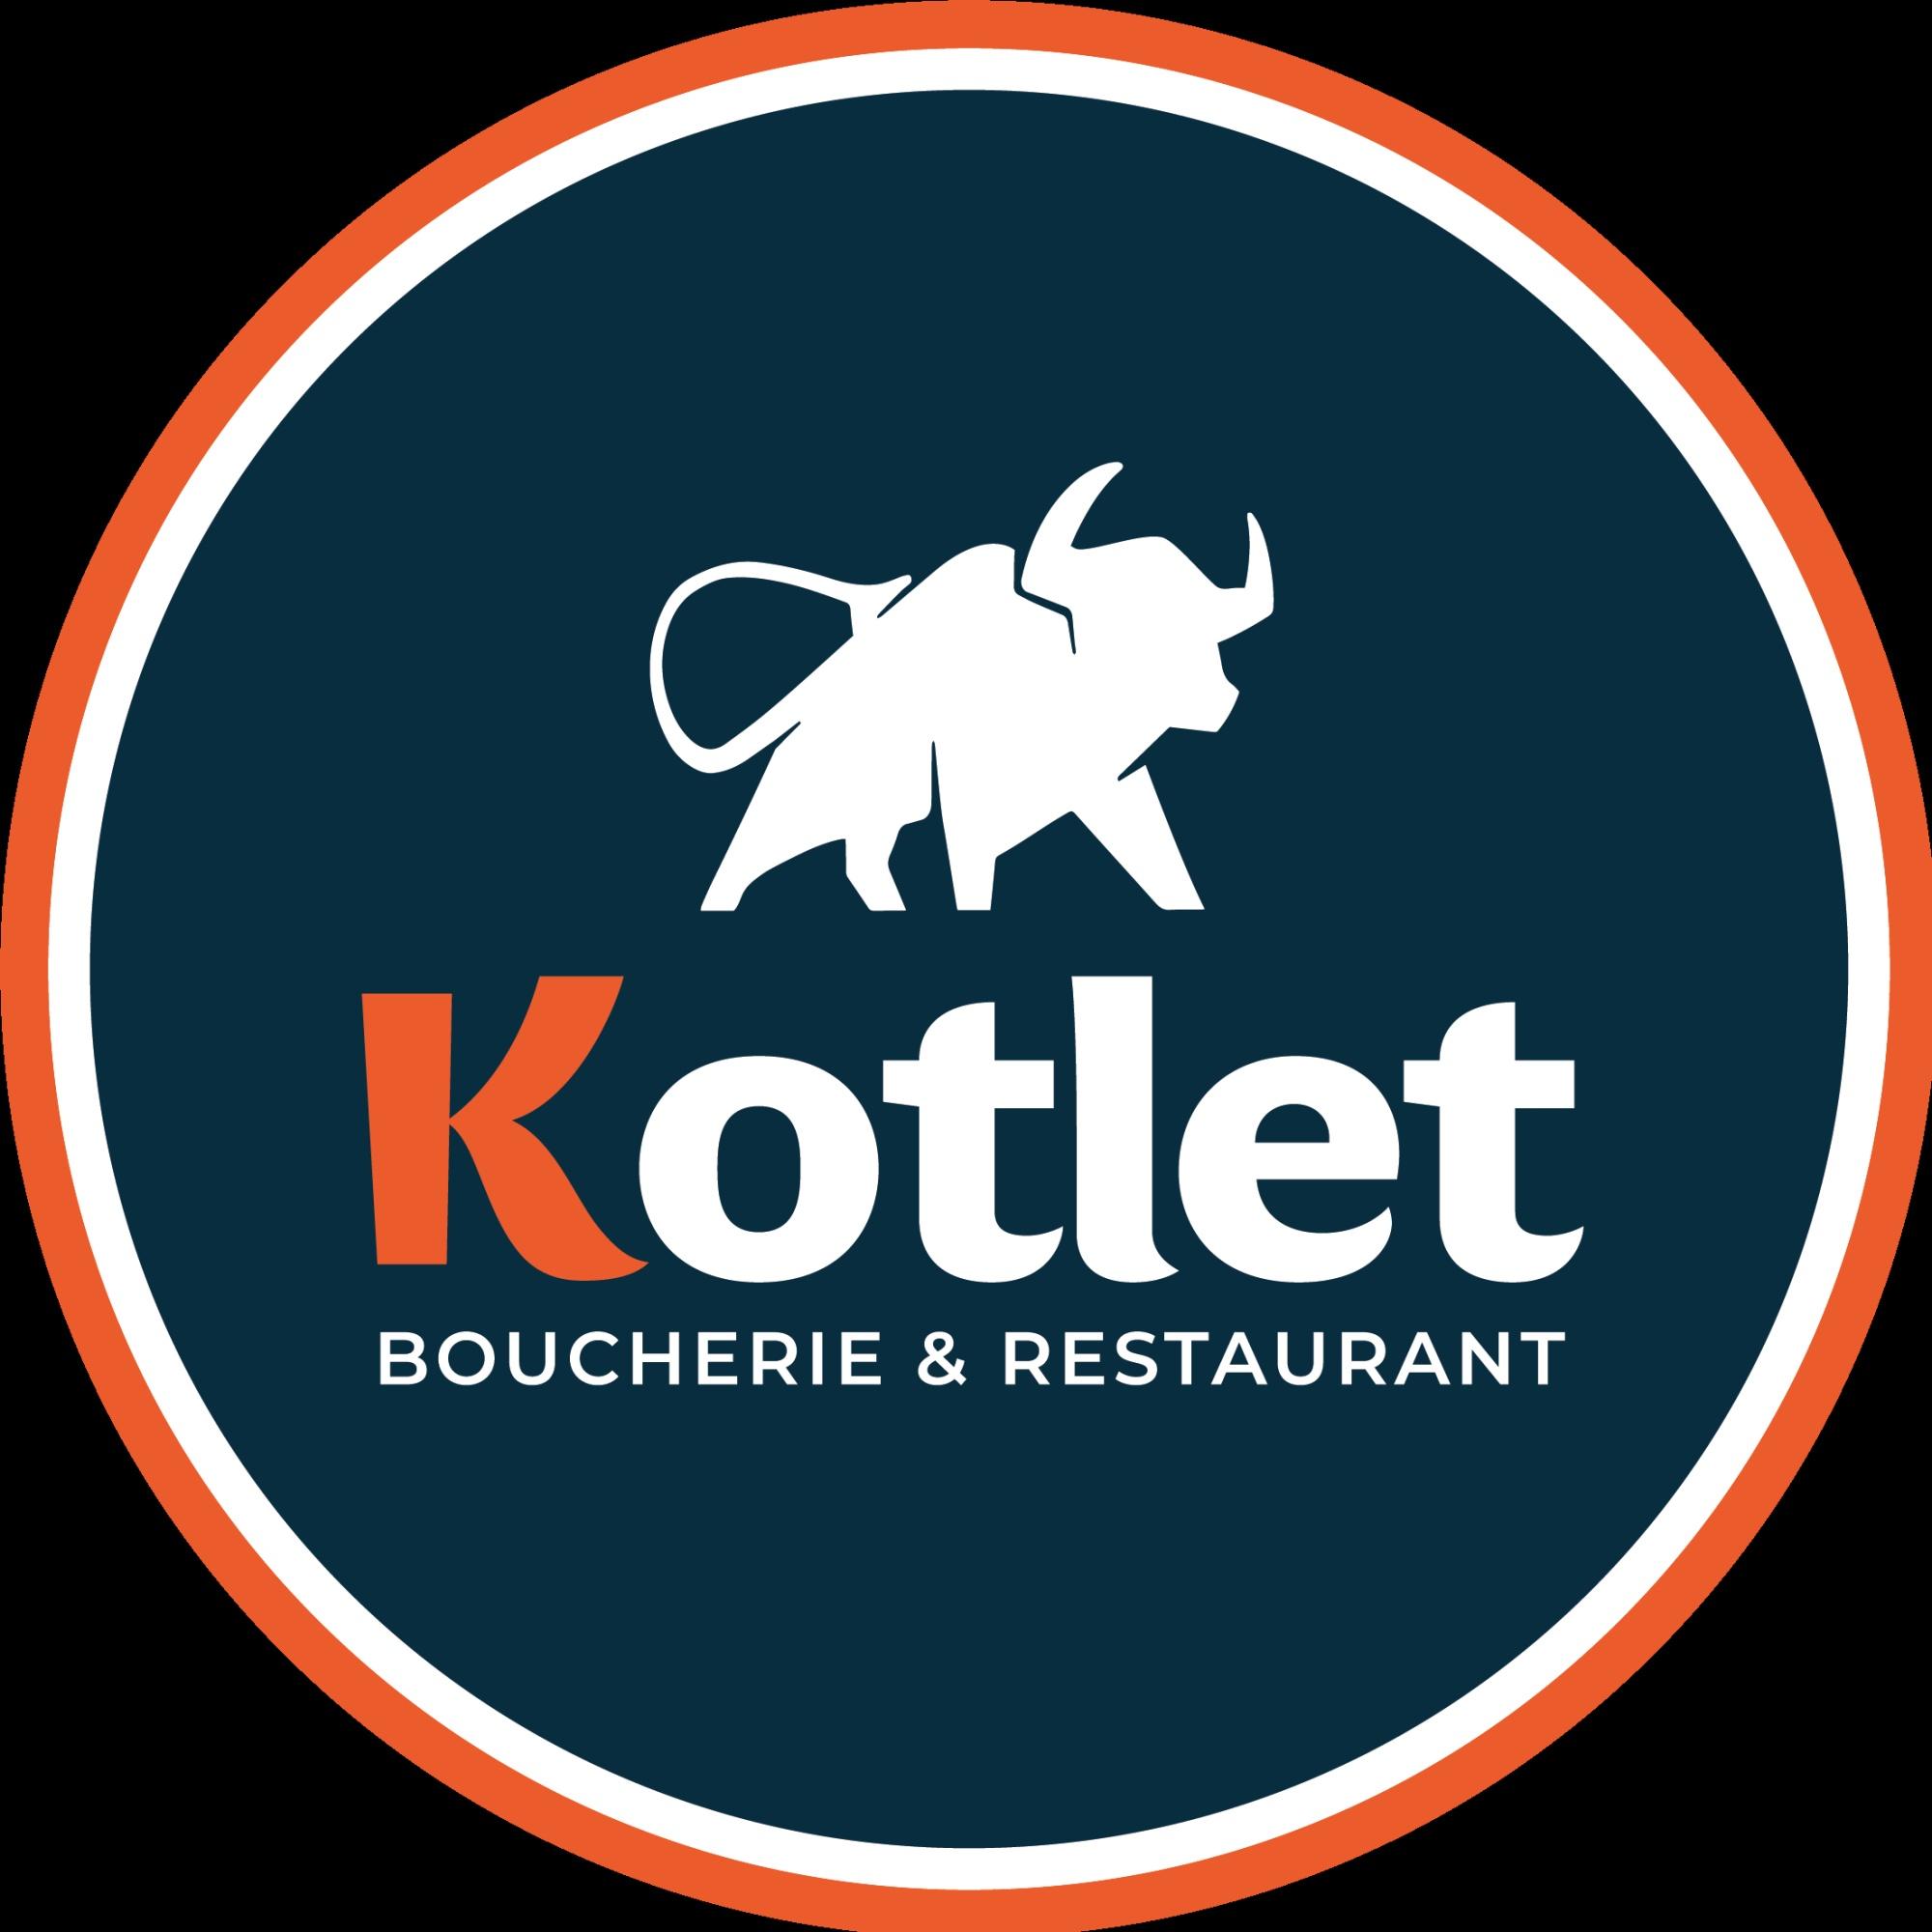 Kotlet - Boucherie & Restaurant Châtillon Châtillon